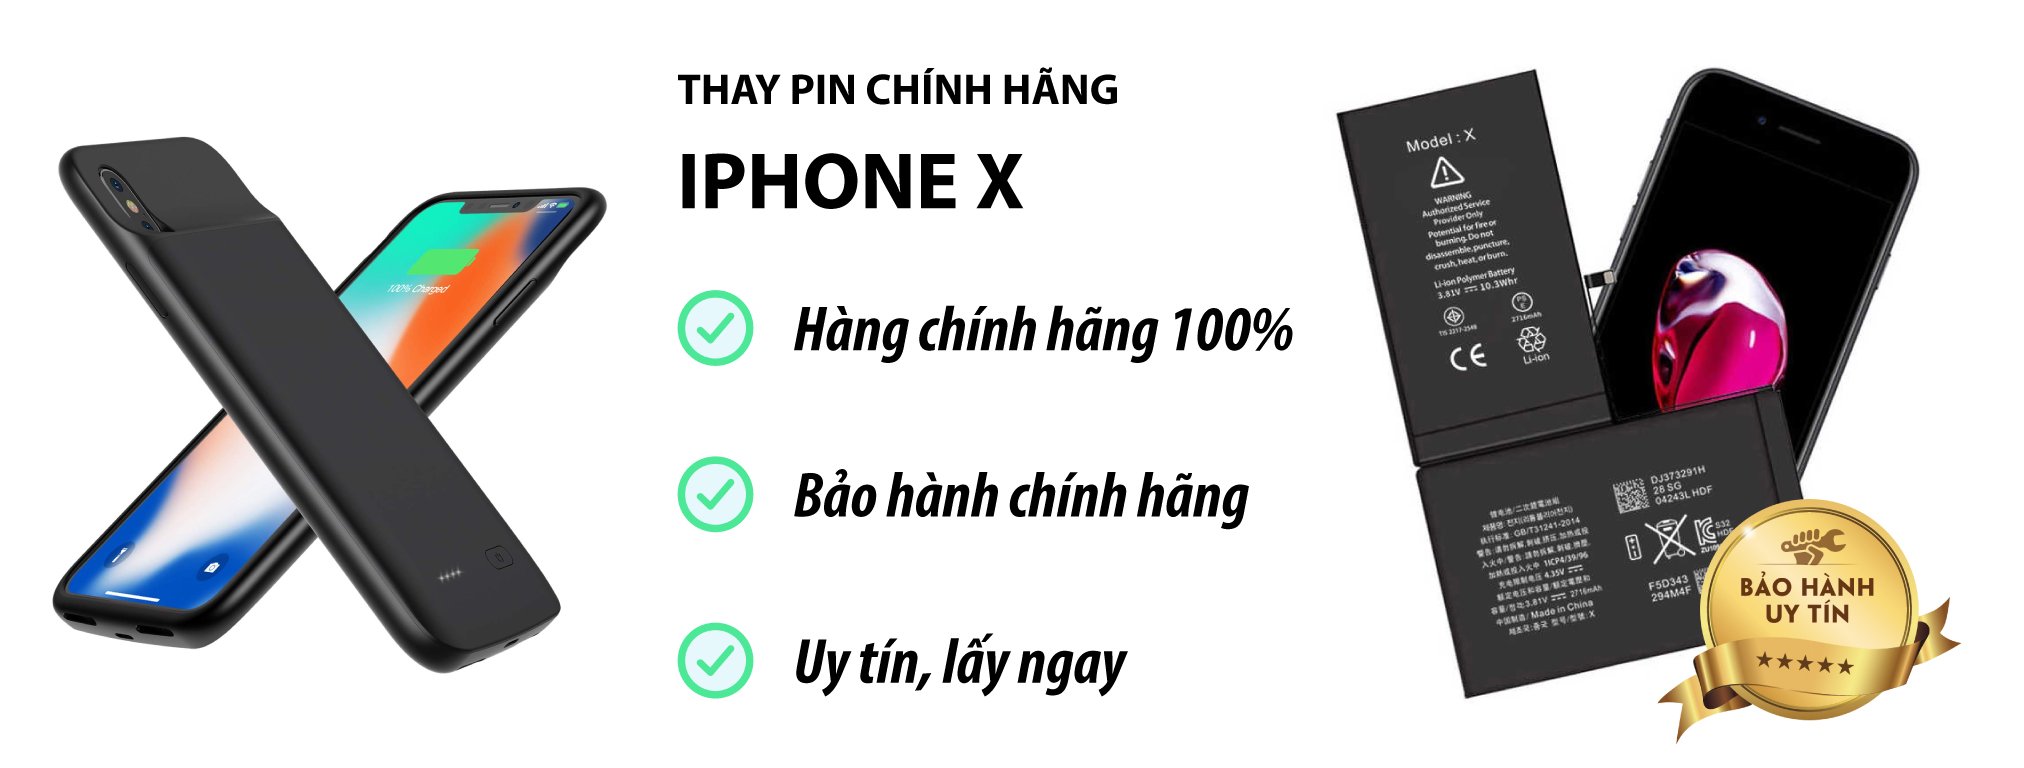 thay pin iphone x chính hãng Hà Nội